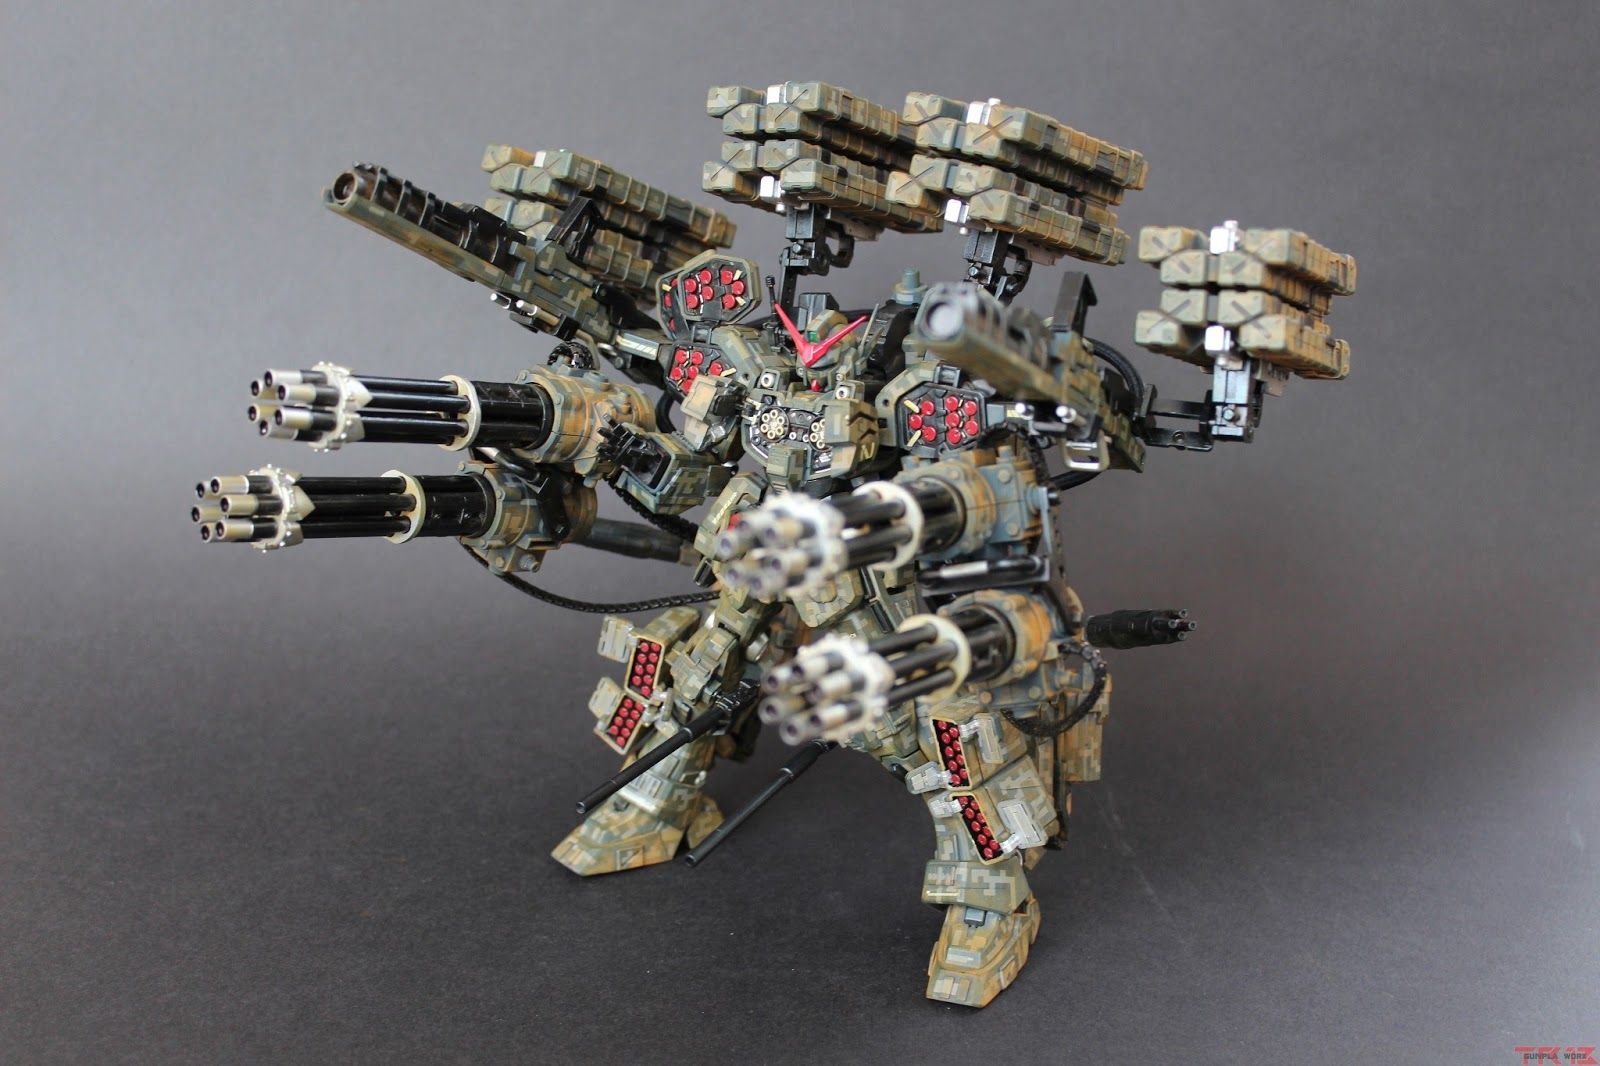 MG 1/100 Heavyarms / Heavyarm Gundam EW | Bandai gundam models kits ...